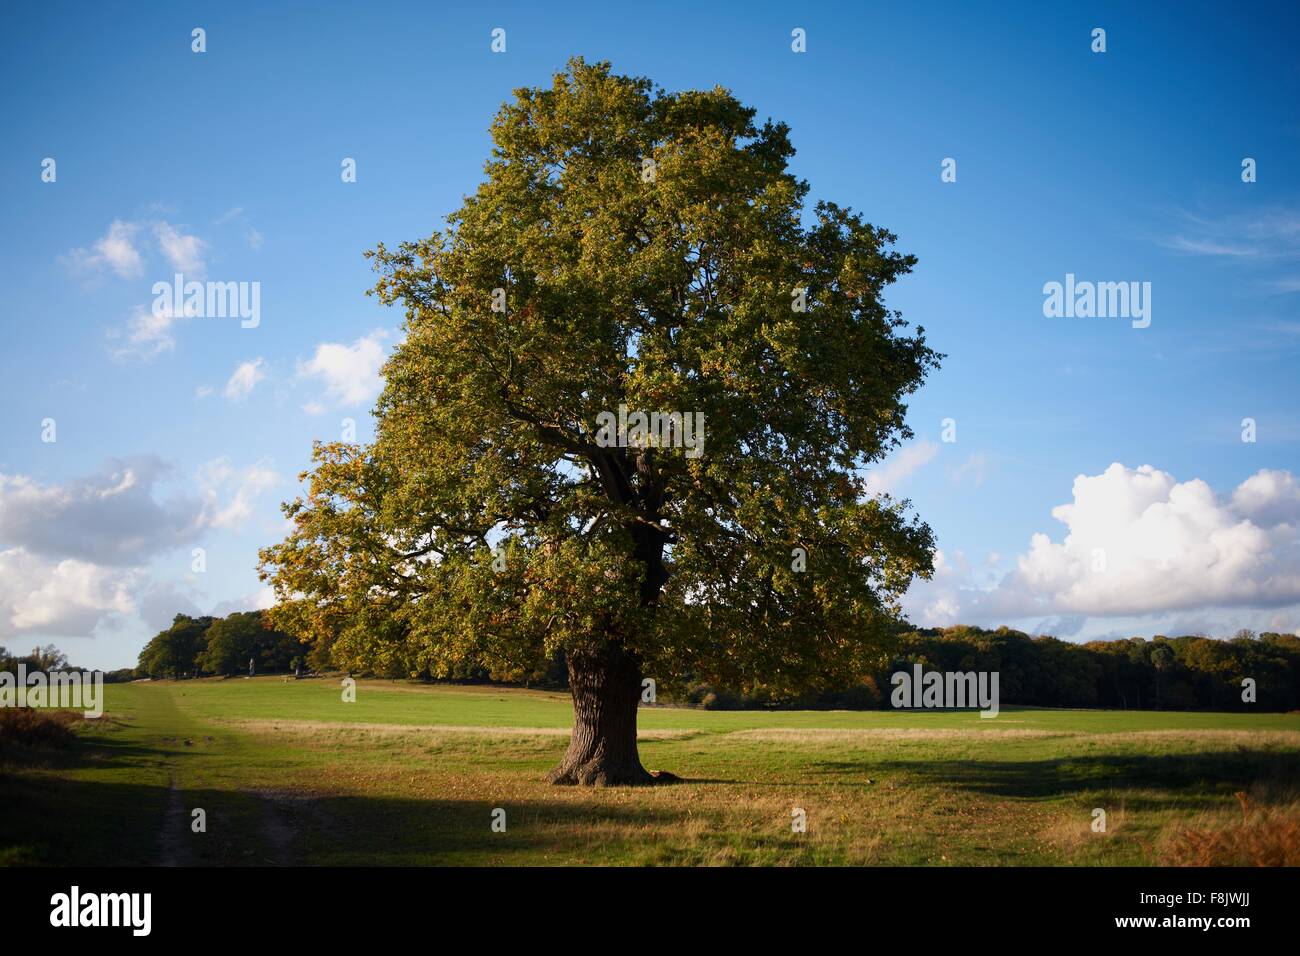 Lone tree in field Stock Photo